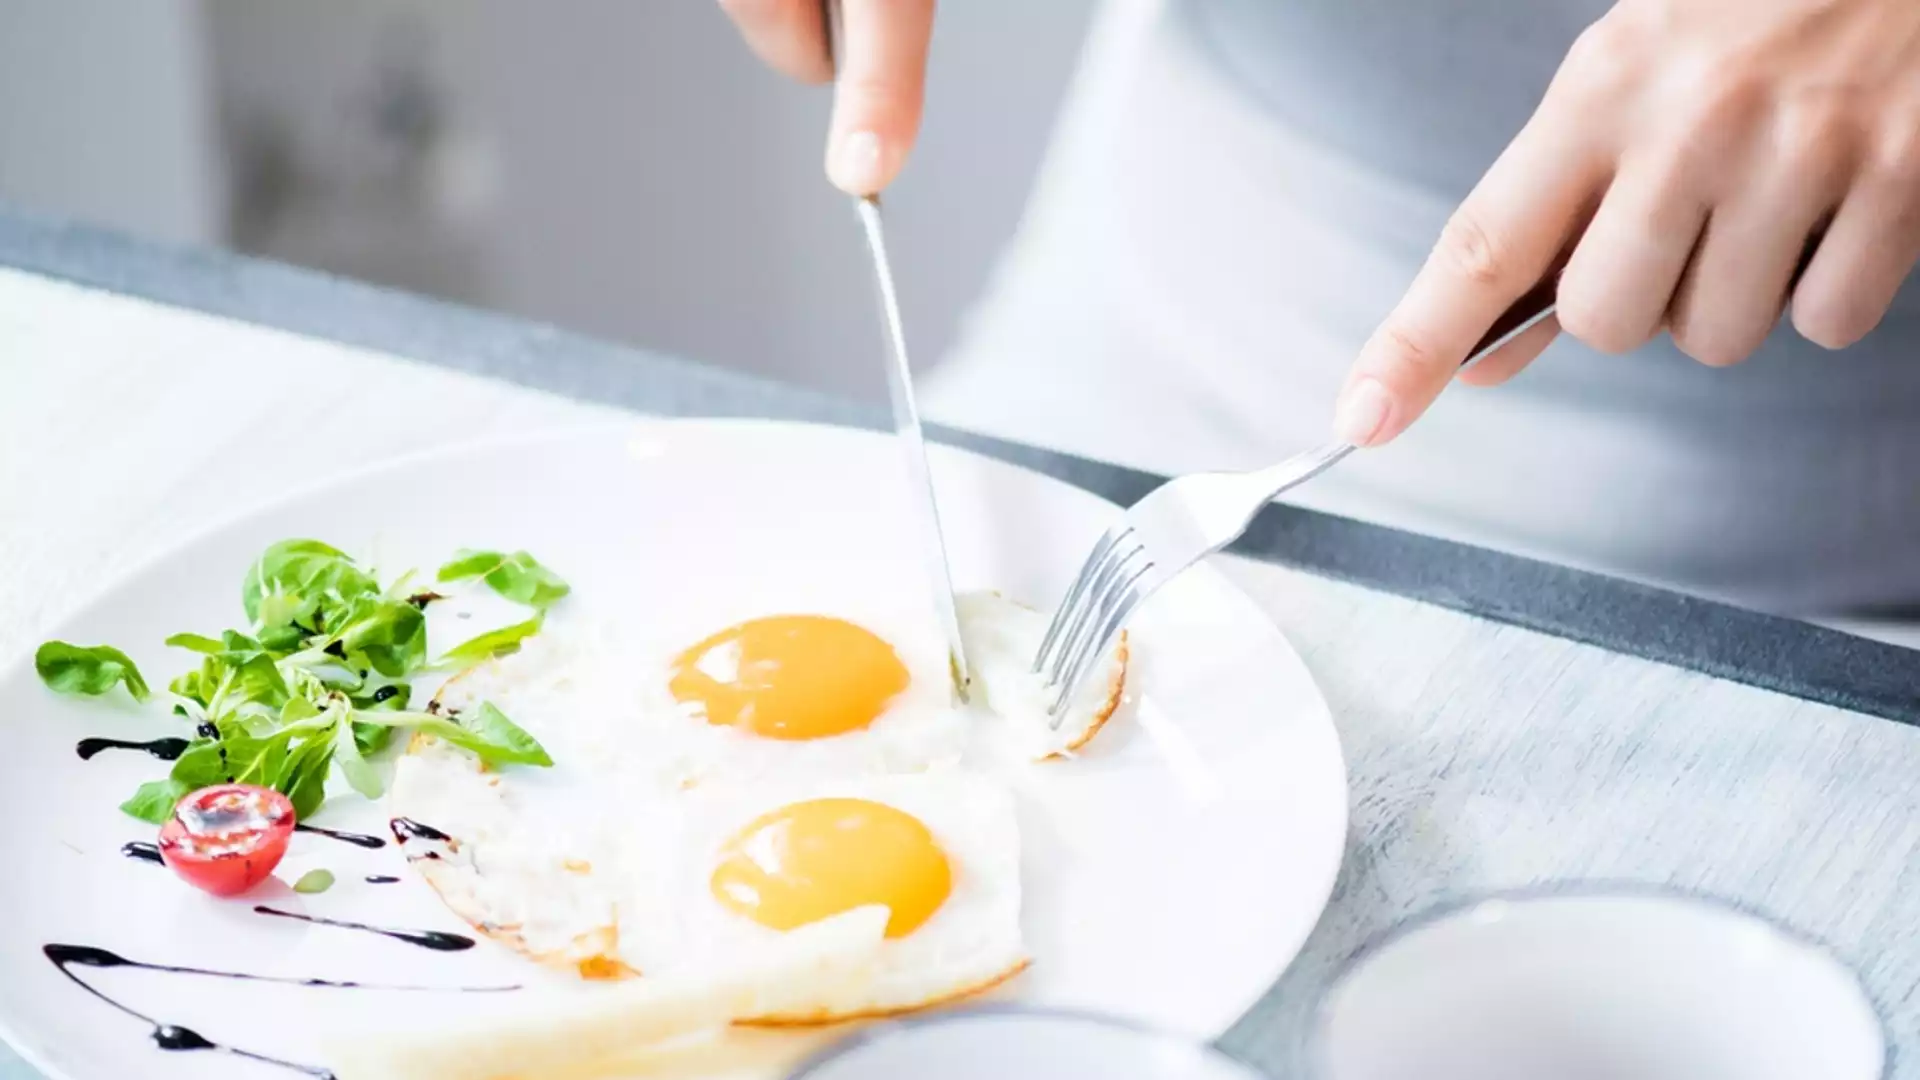 Чудесна закуска: Яйца на очи в масло